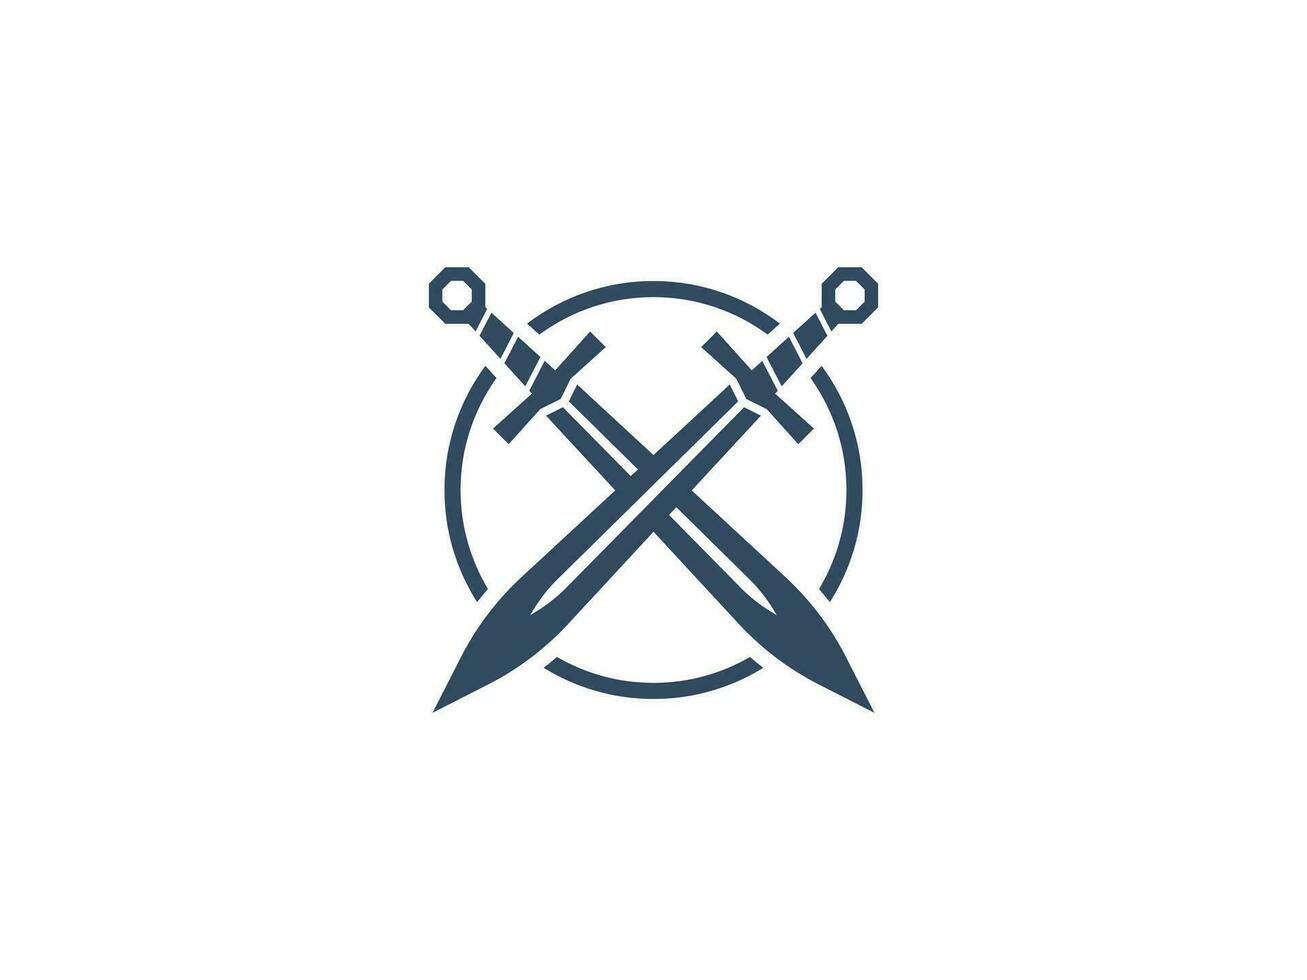 sword circle logo vector icon illustration, logo template